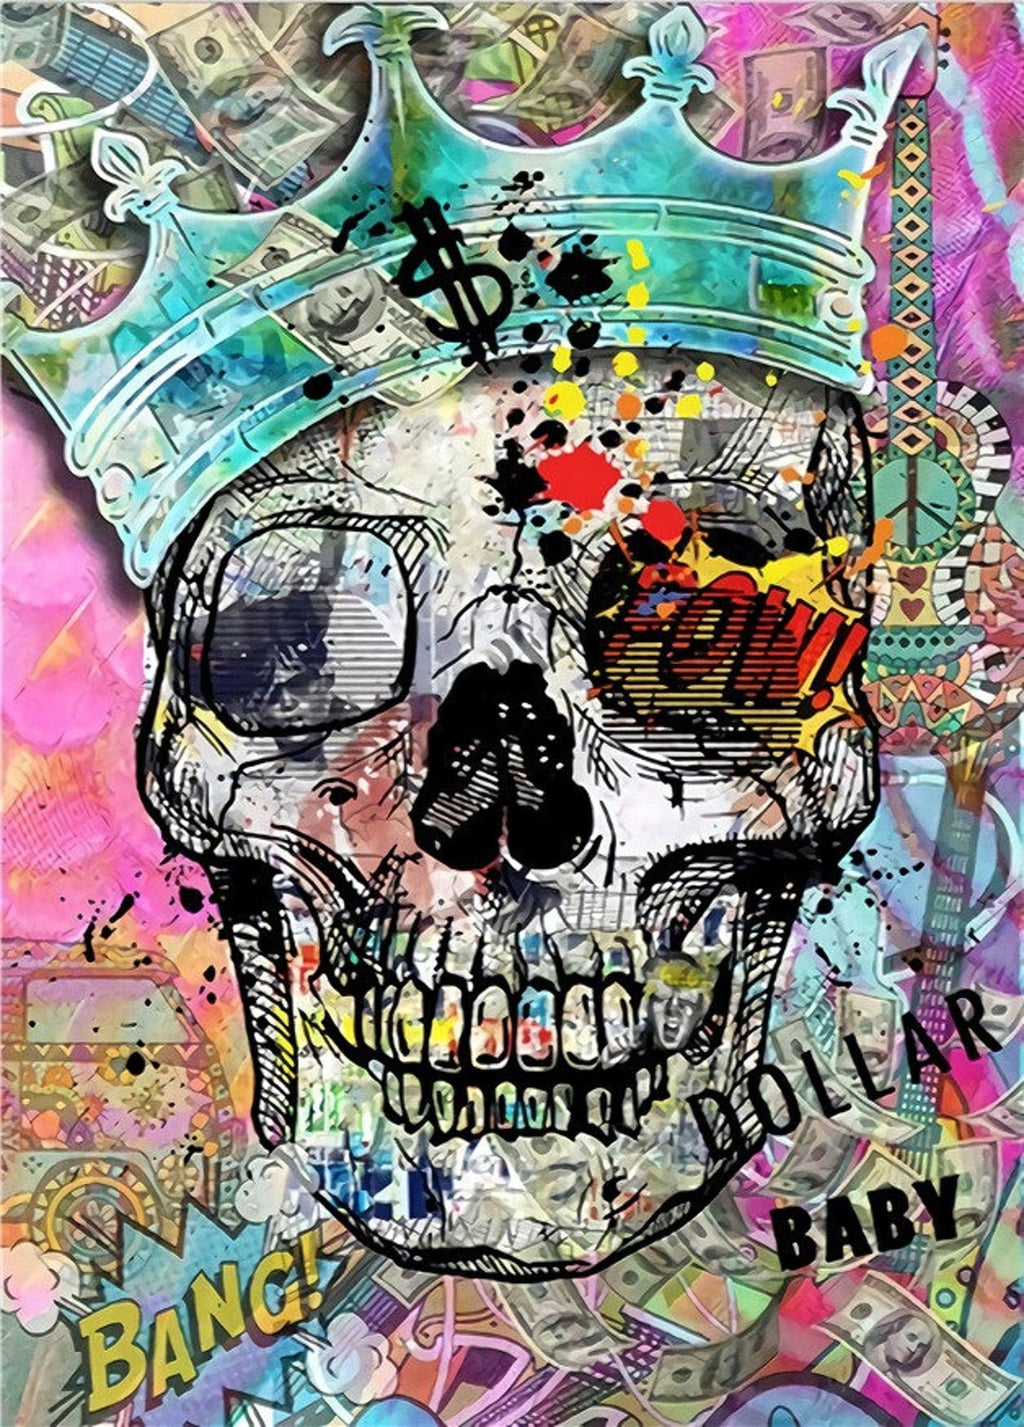 Framed 1 Panel - Skull